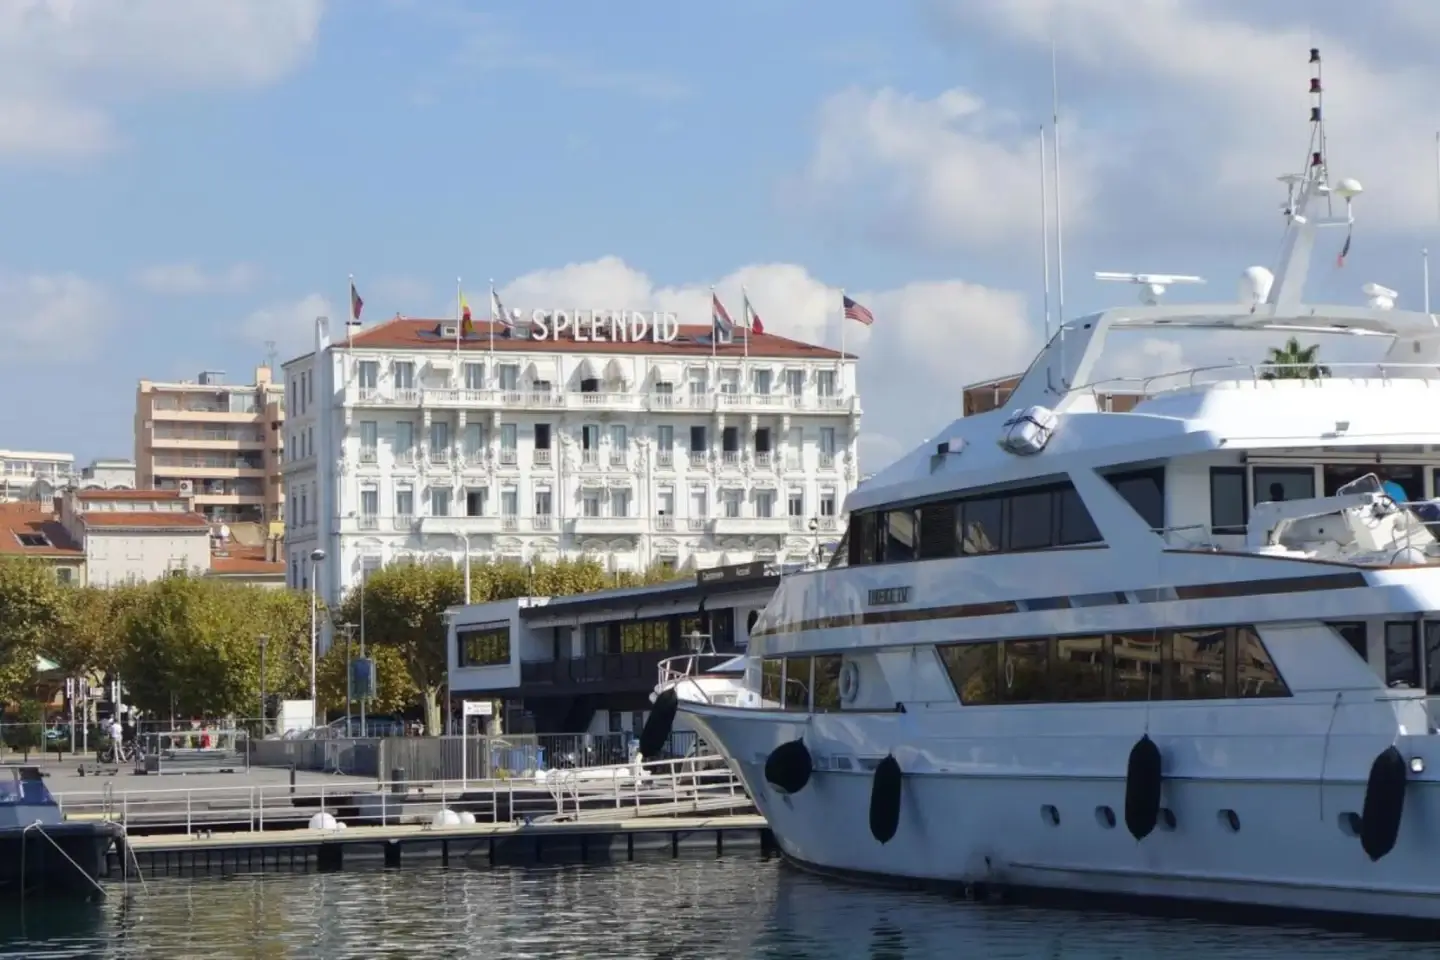  Hôtel Splendid Cannes - Hôtels à Cannes 